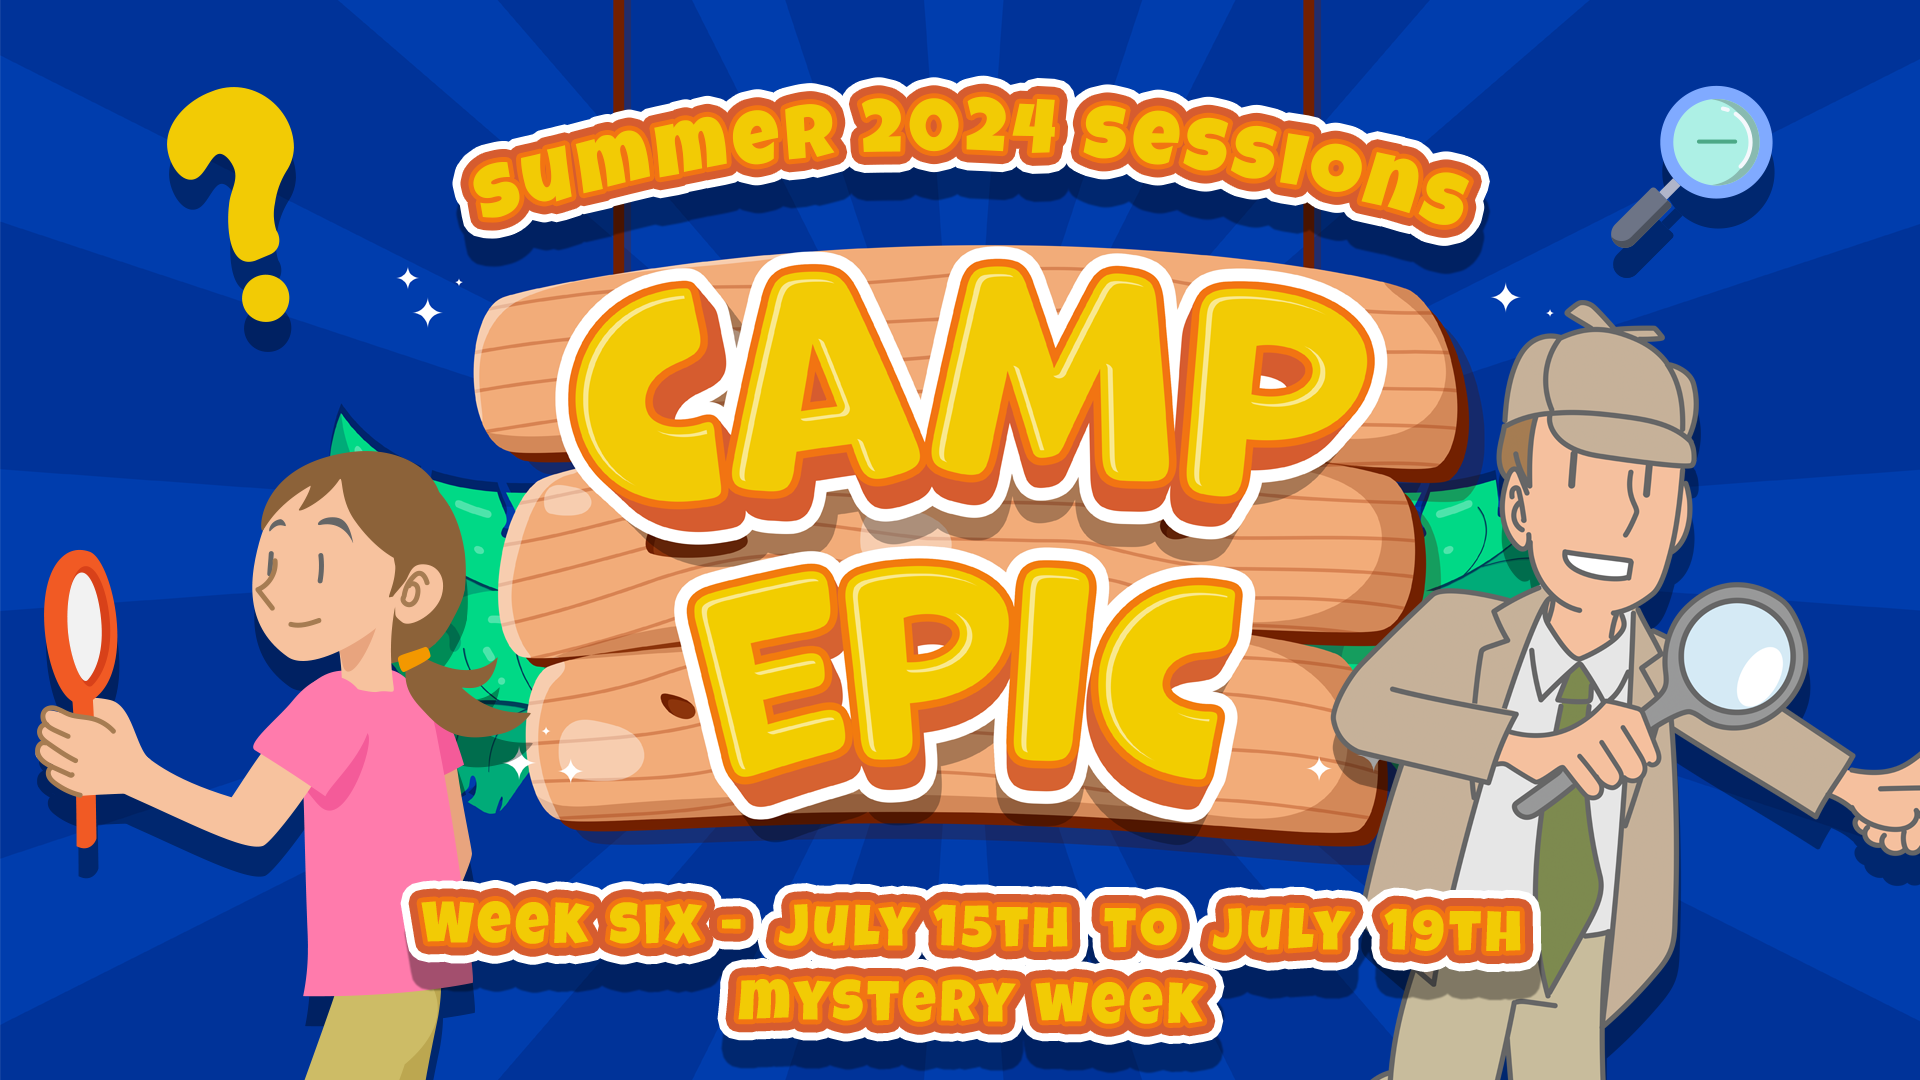 Camp Epic Week 6